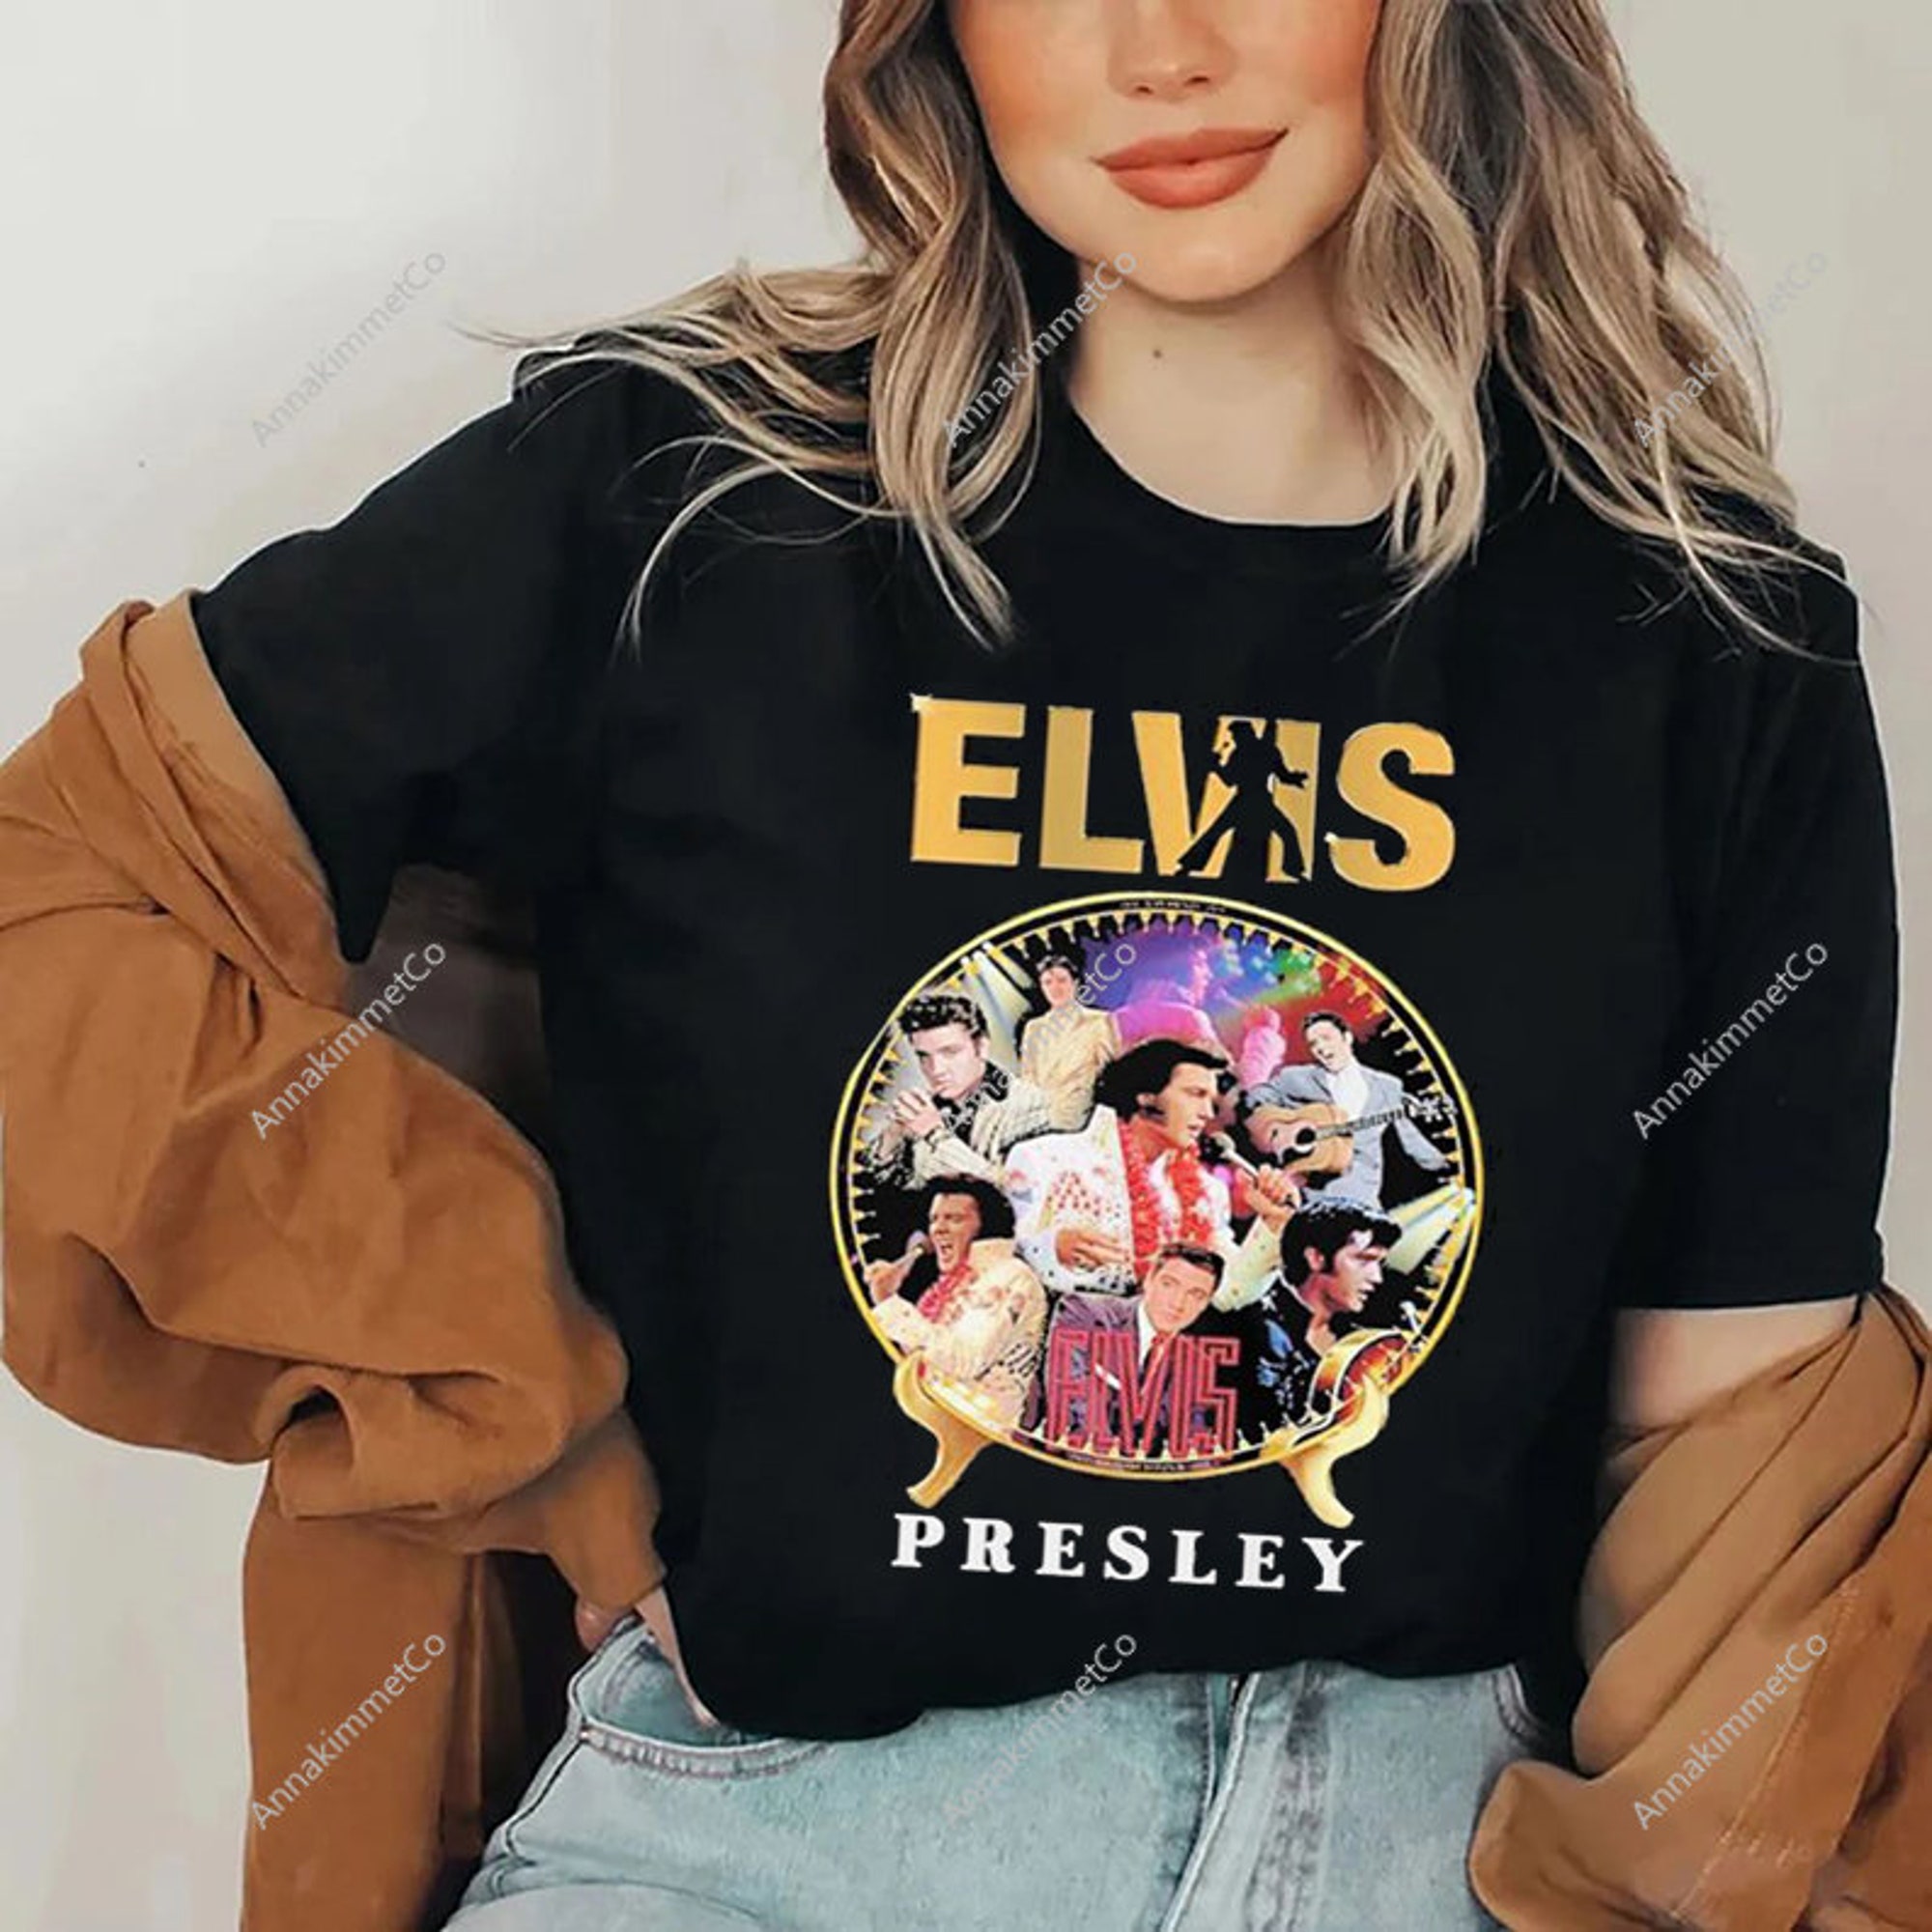 Elvis Presley Shirt, Elvis Presley 2022 Movie for T shirt, ELVIS Shirt, Elvis Tom Hanks-Austin Butler Movie 2022